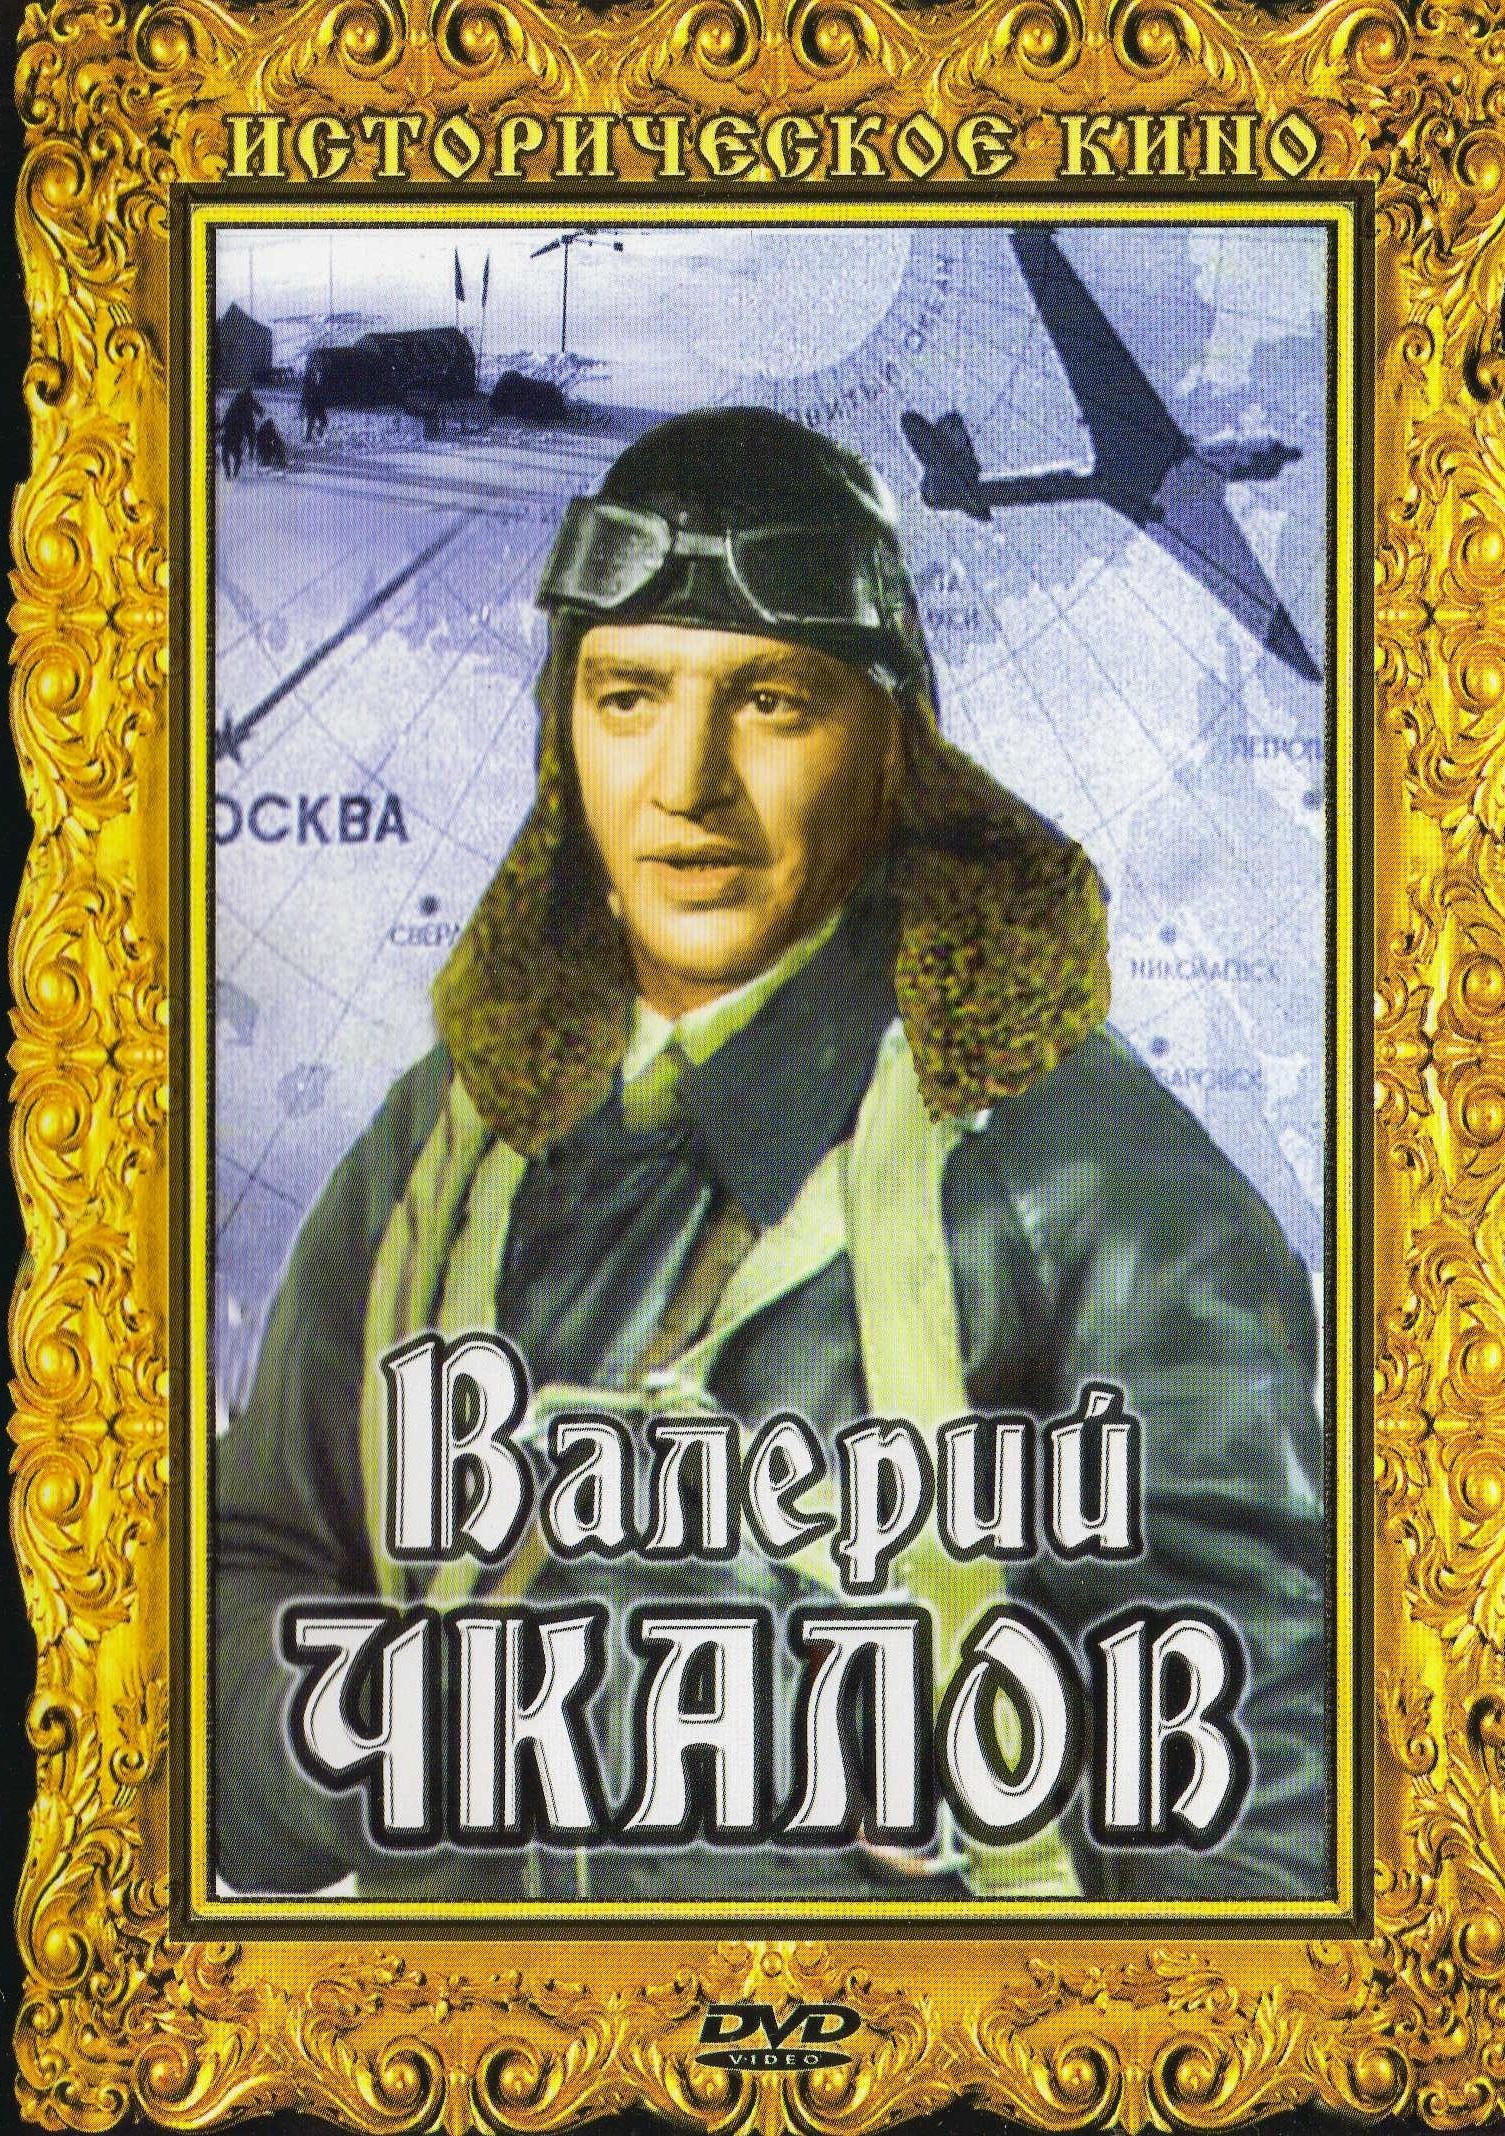 Валерий Чкалов фильм 1941